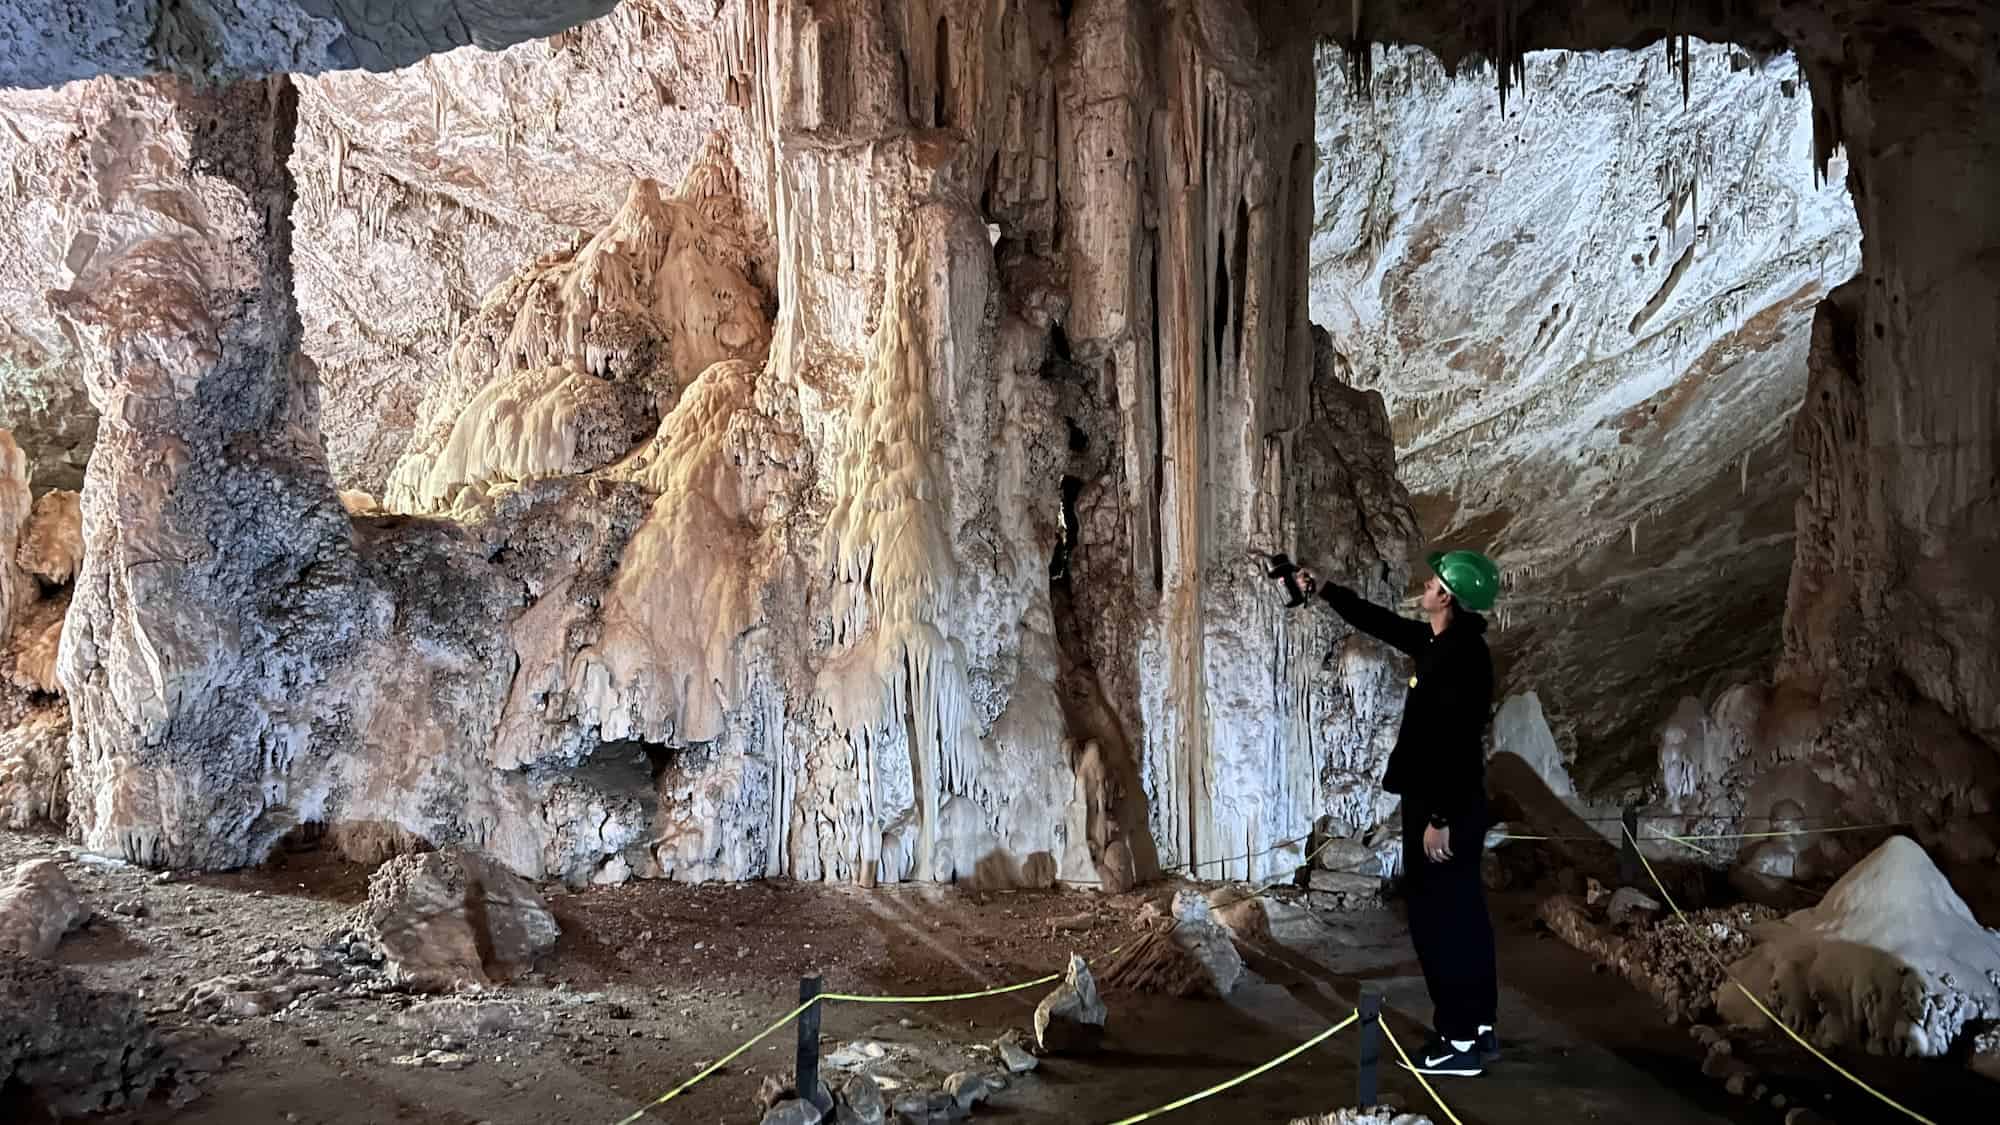 SAO MIGUEL Grotto